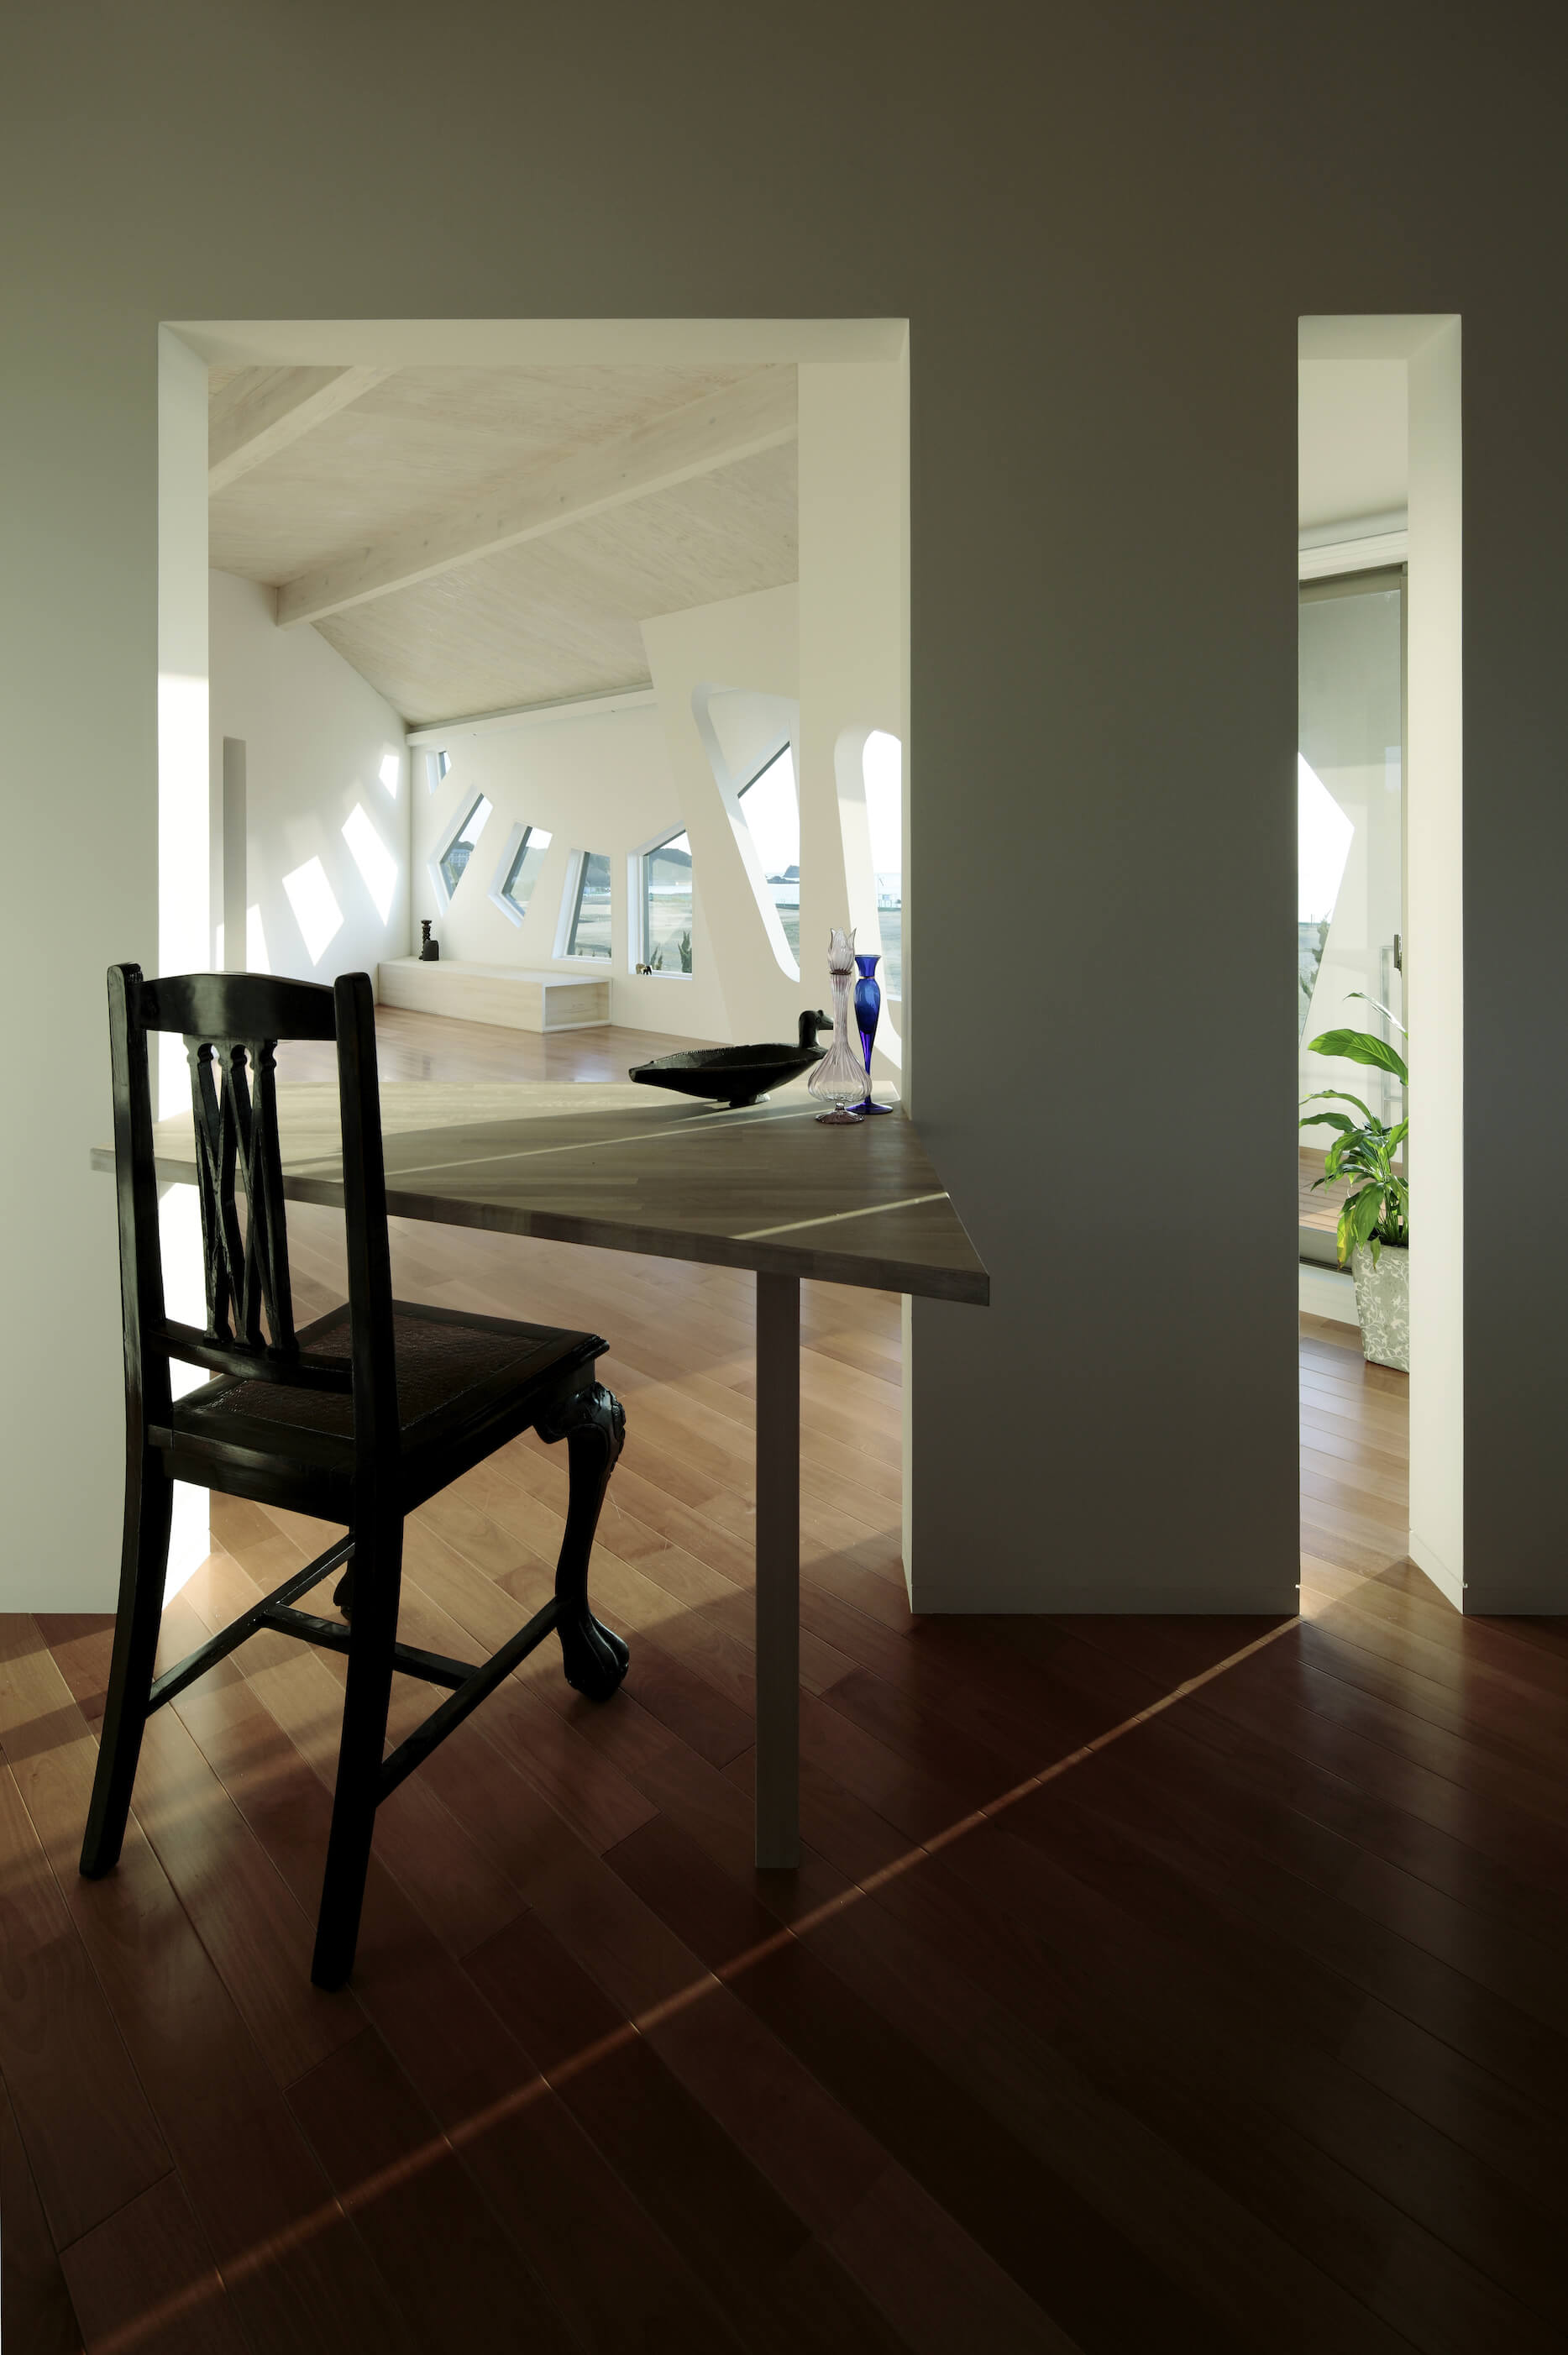 角和有机形式混合在整个家庭。这张天然木桌反映了多边形的窗户形状，通过墙缝可以看到开放的客厅空间。